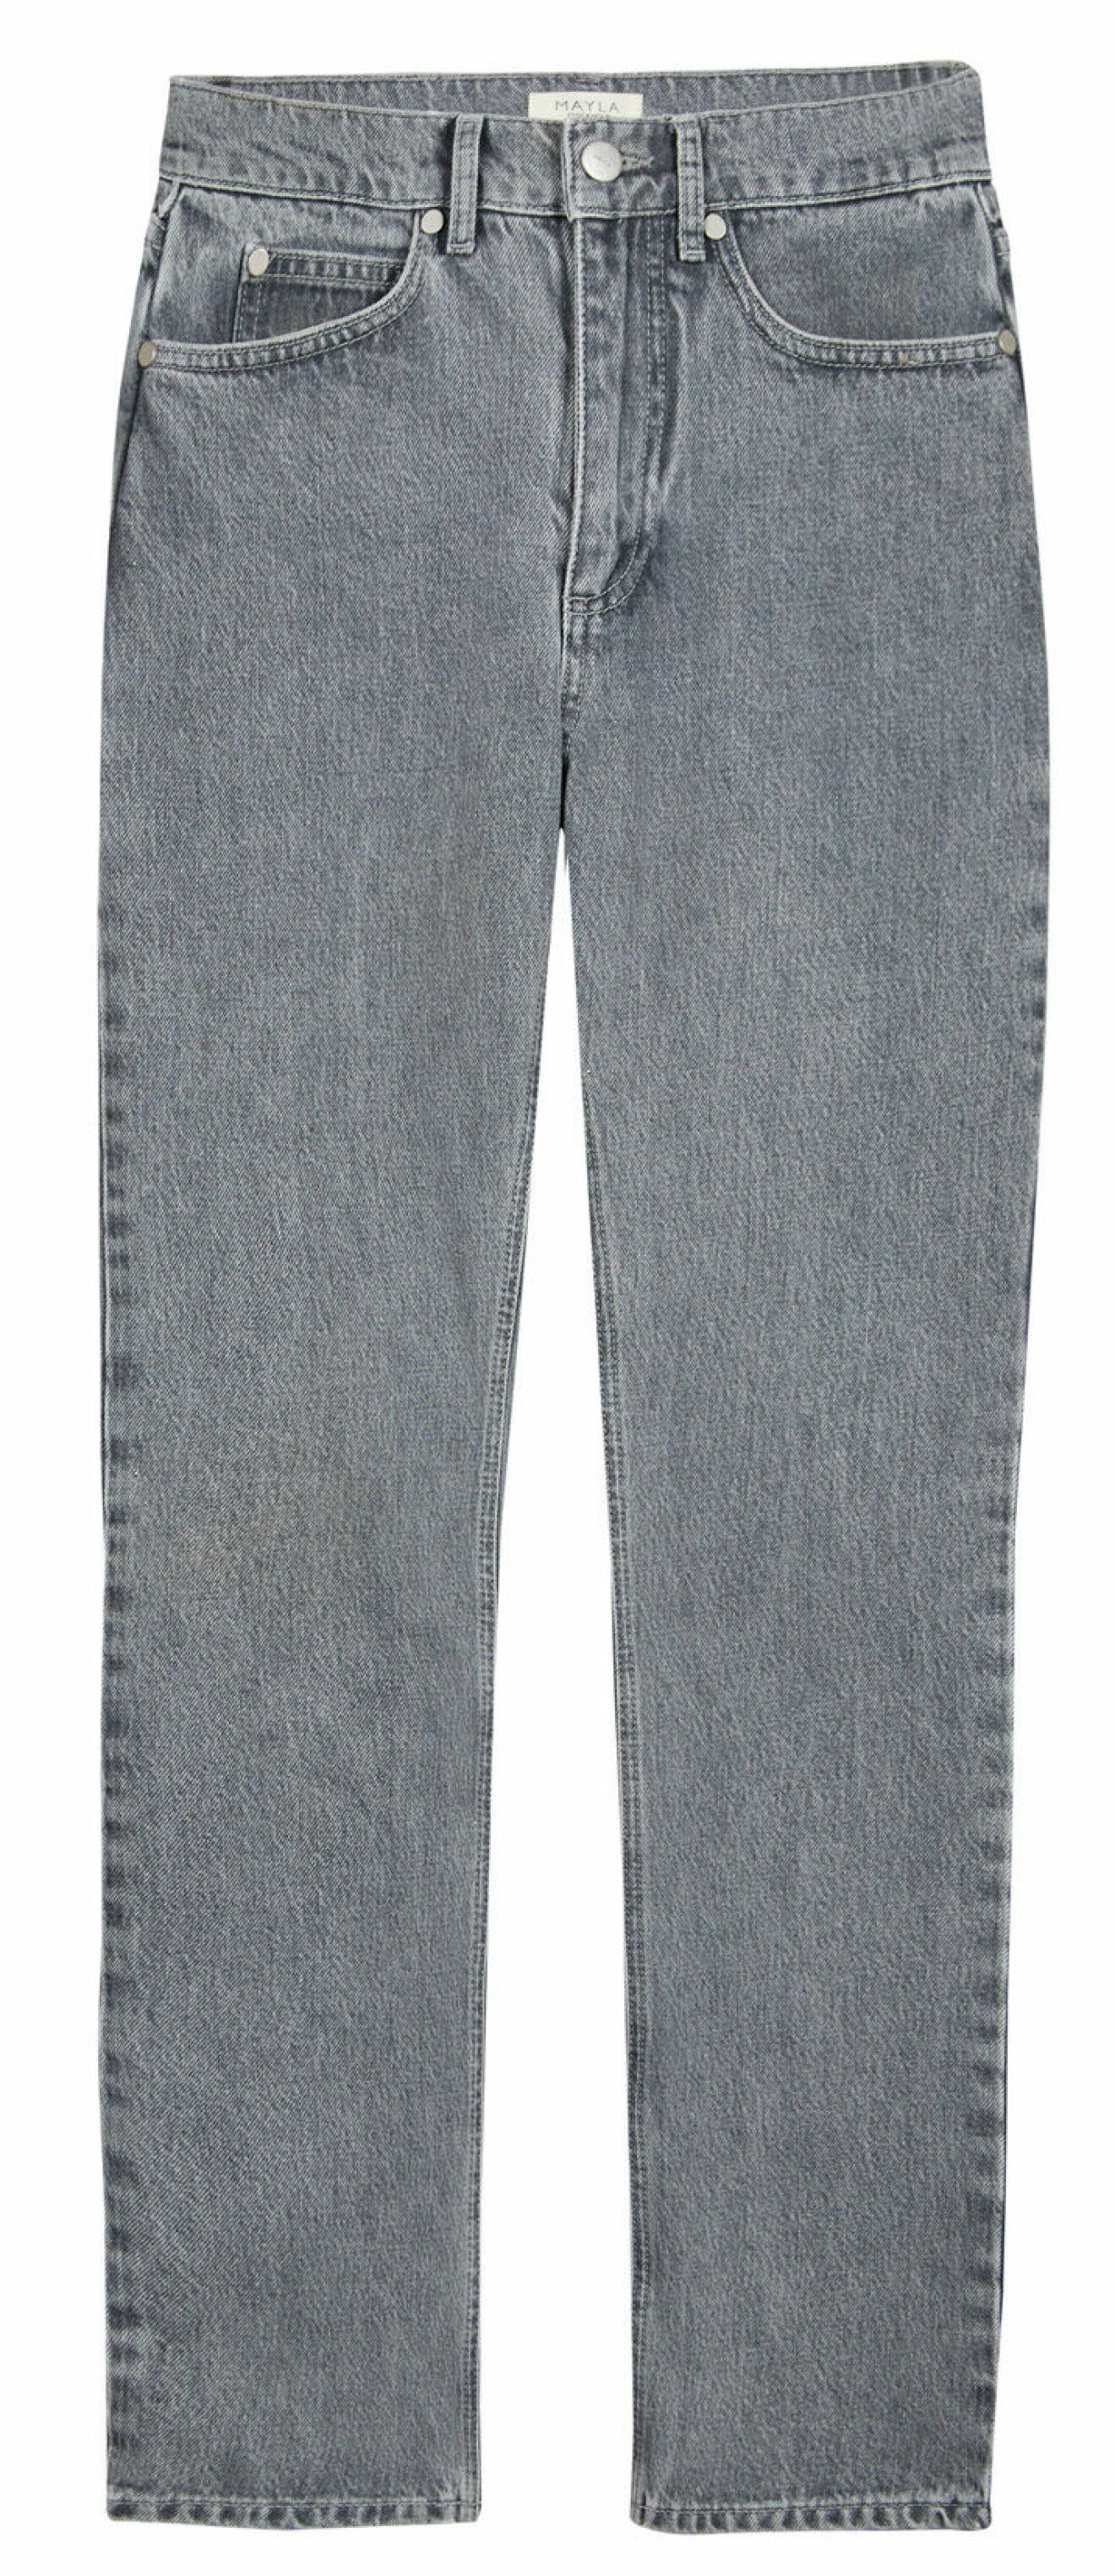 Jeans i grå tvätt från Mayla.